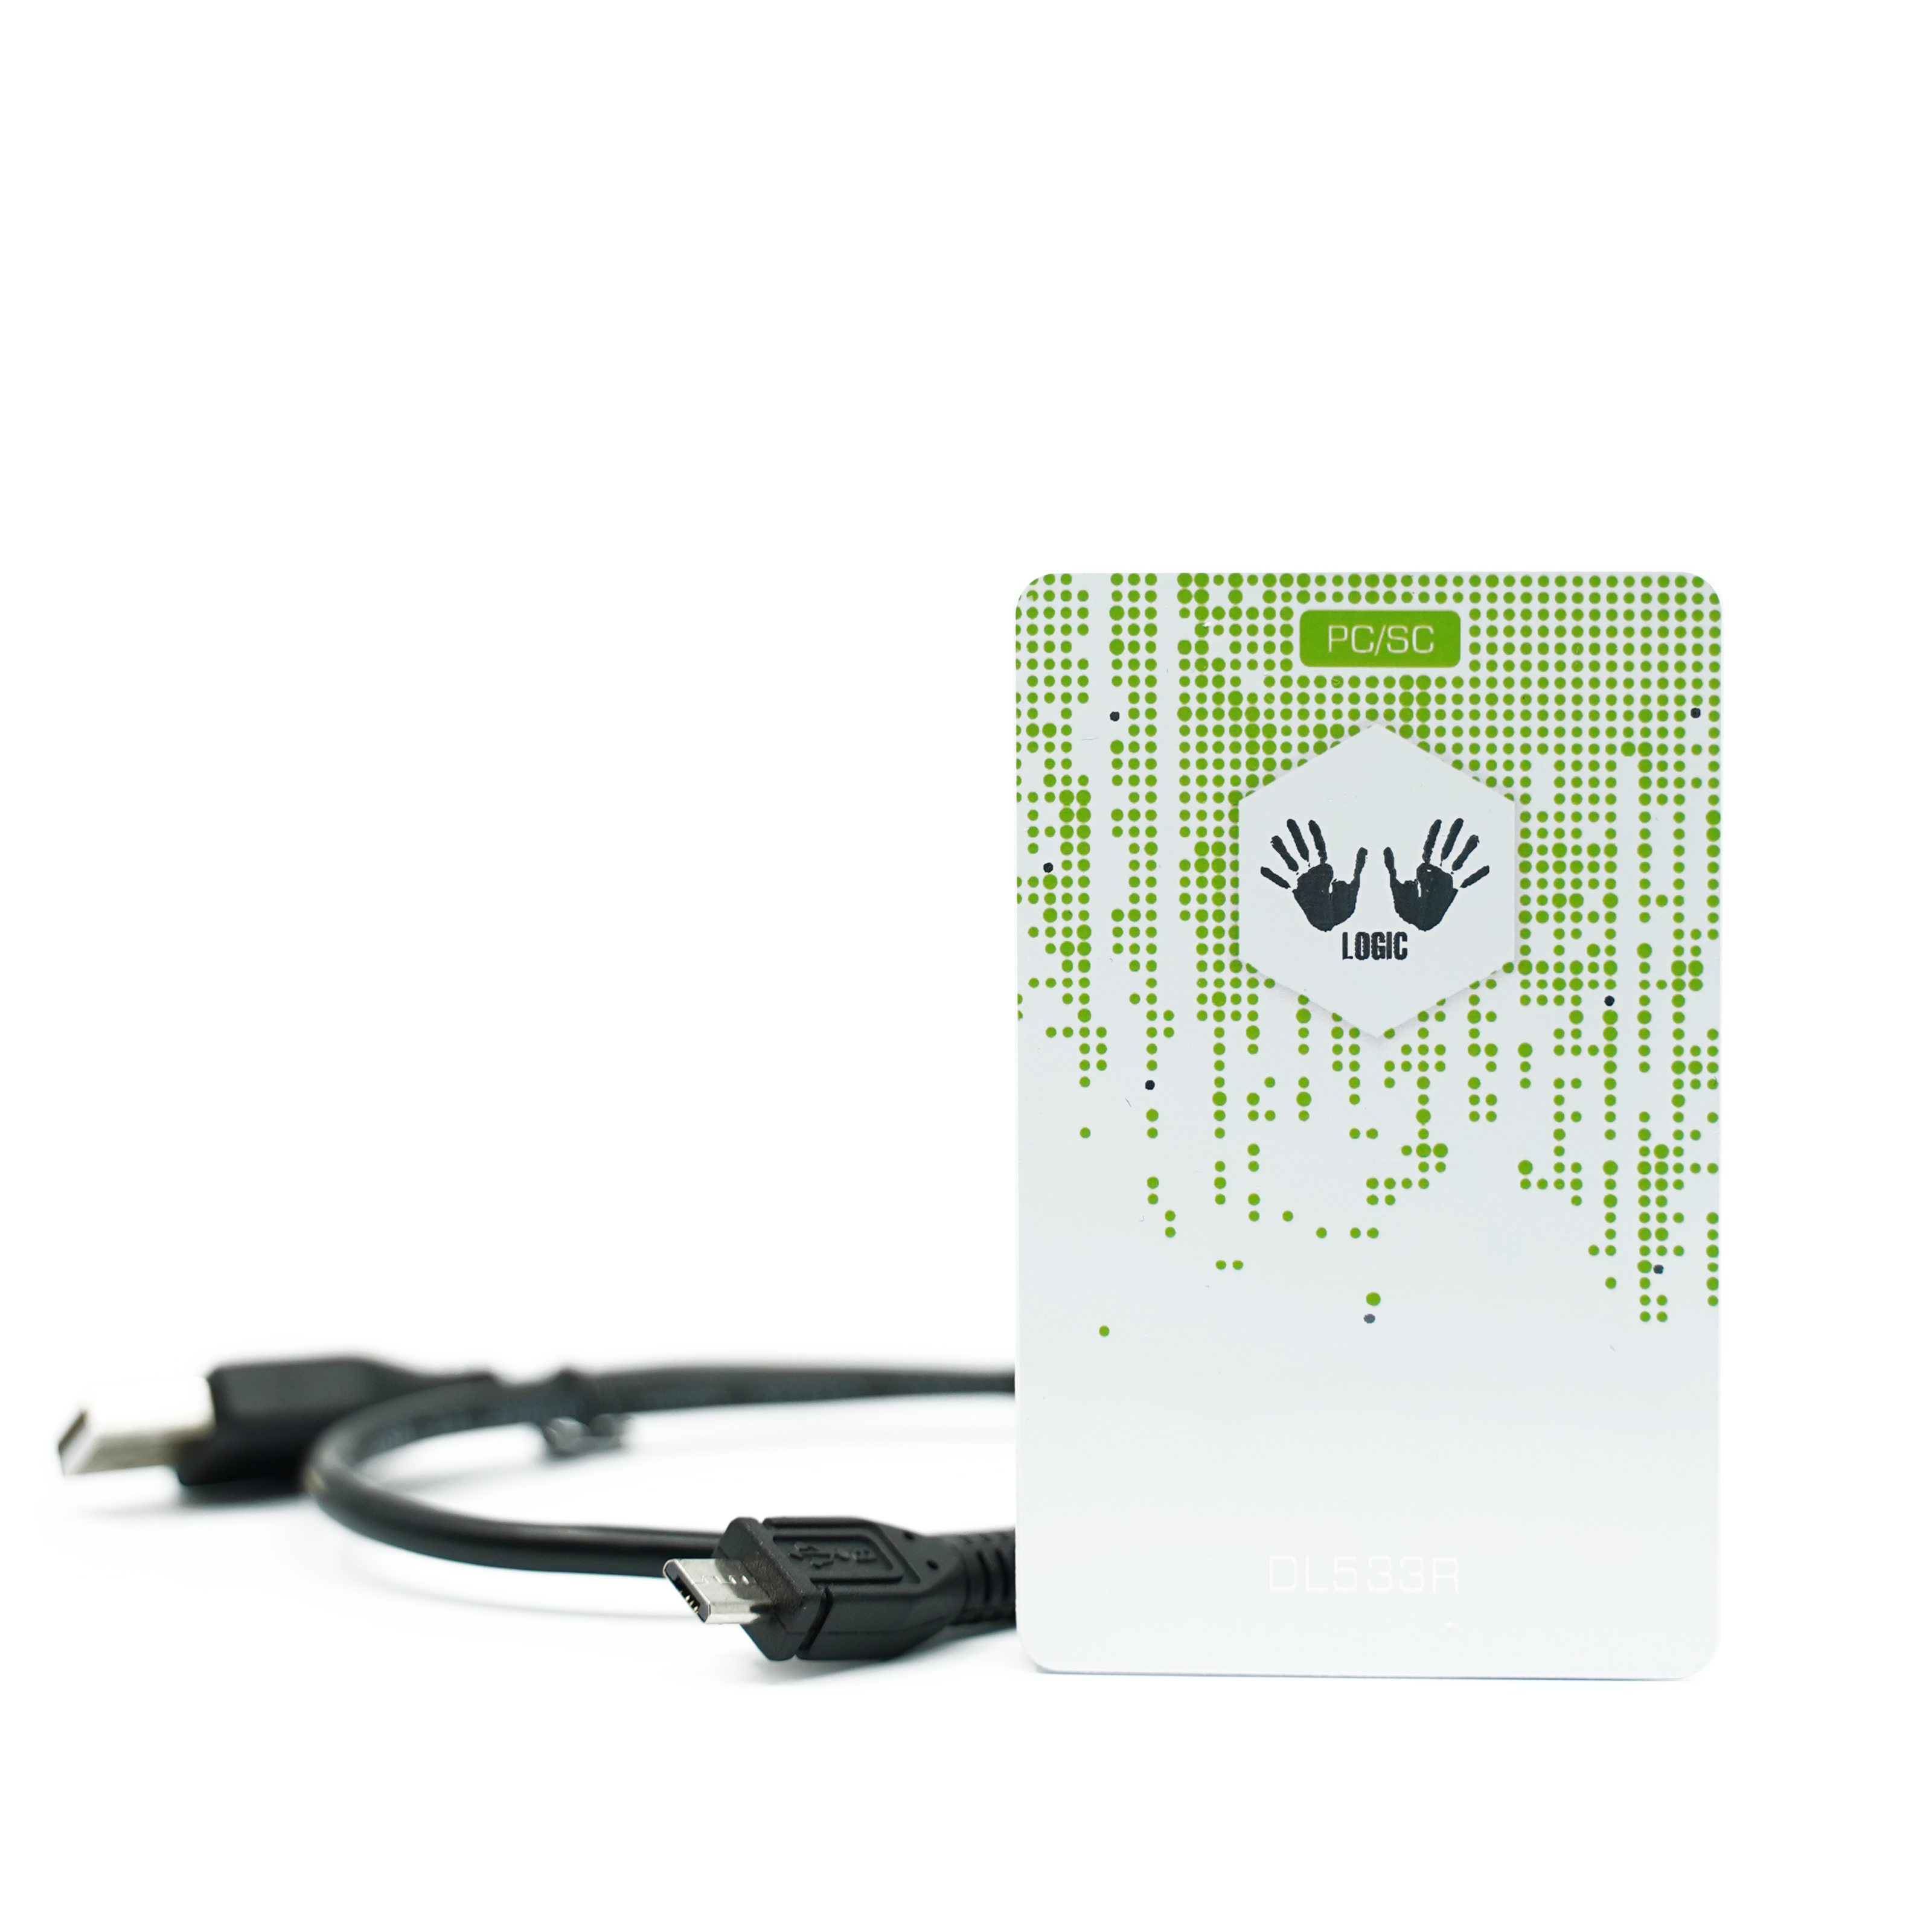 Vorderseite des weiß grünen NFC Readers mit zugehörigen Micro-USB Kabel